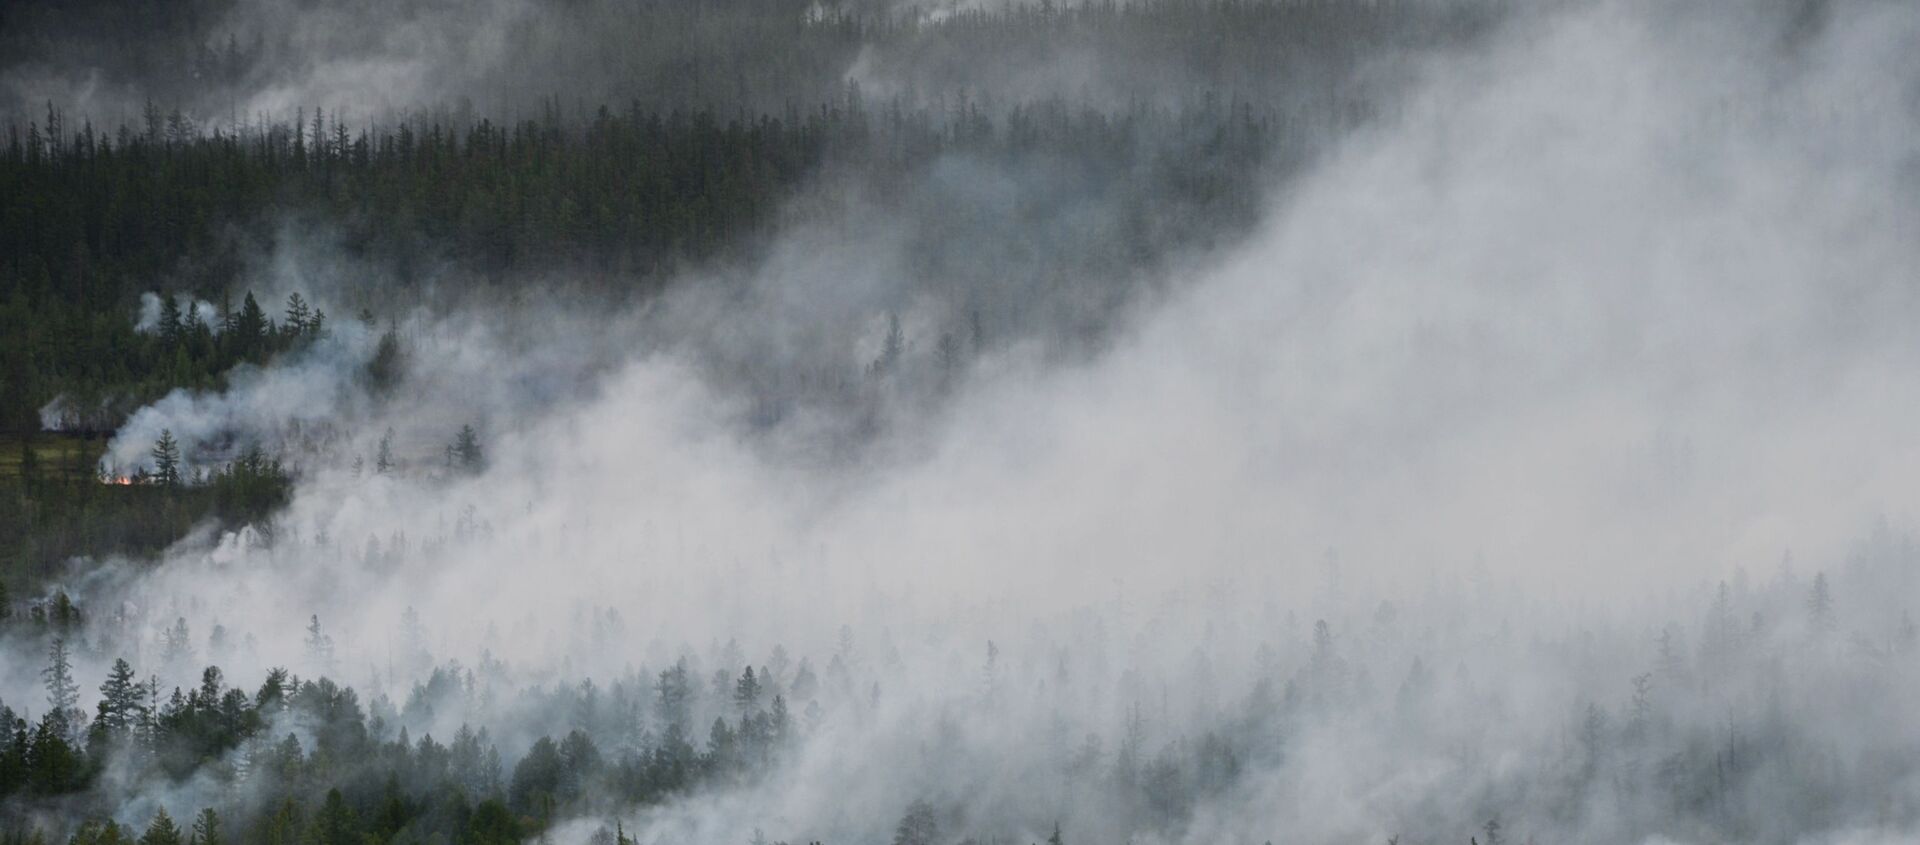 Вид на лесные пожары в Республике Саха (Якутия) с борта вертолета - Sputnik 日本, 1920, 29.06.2020